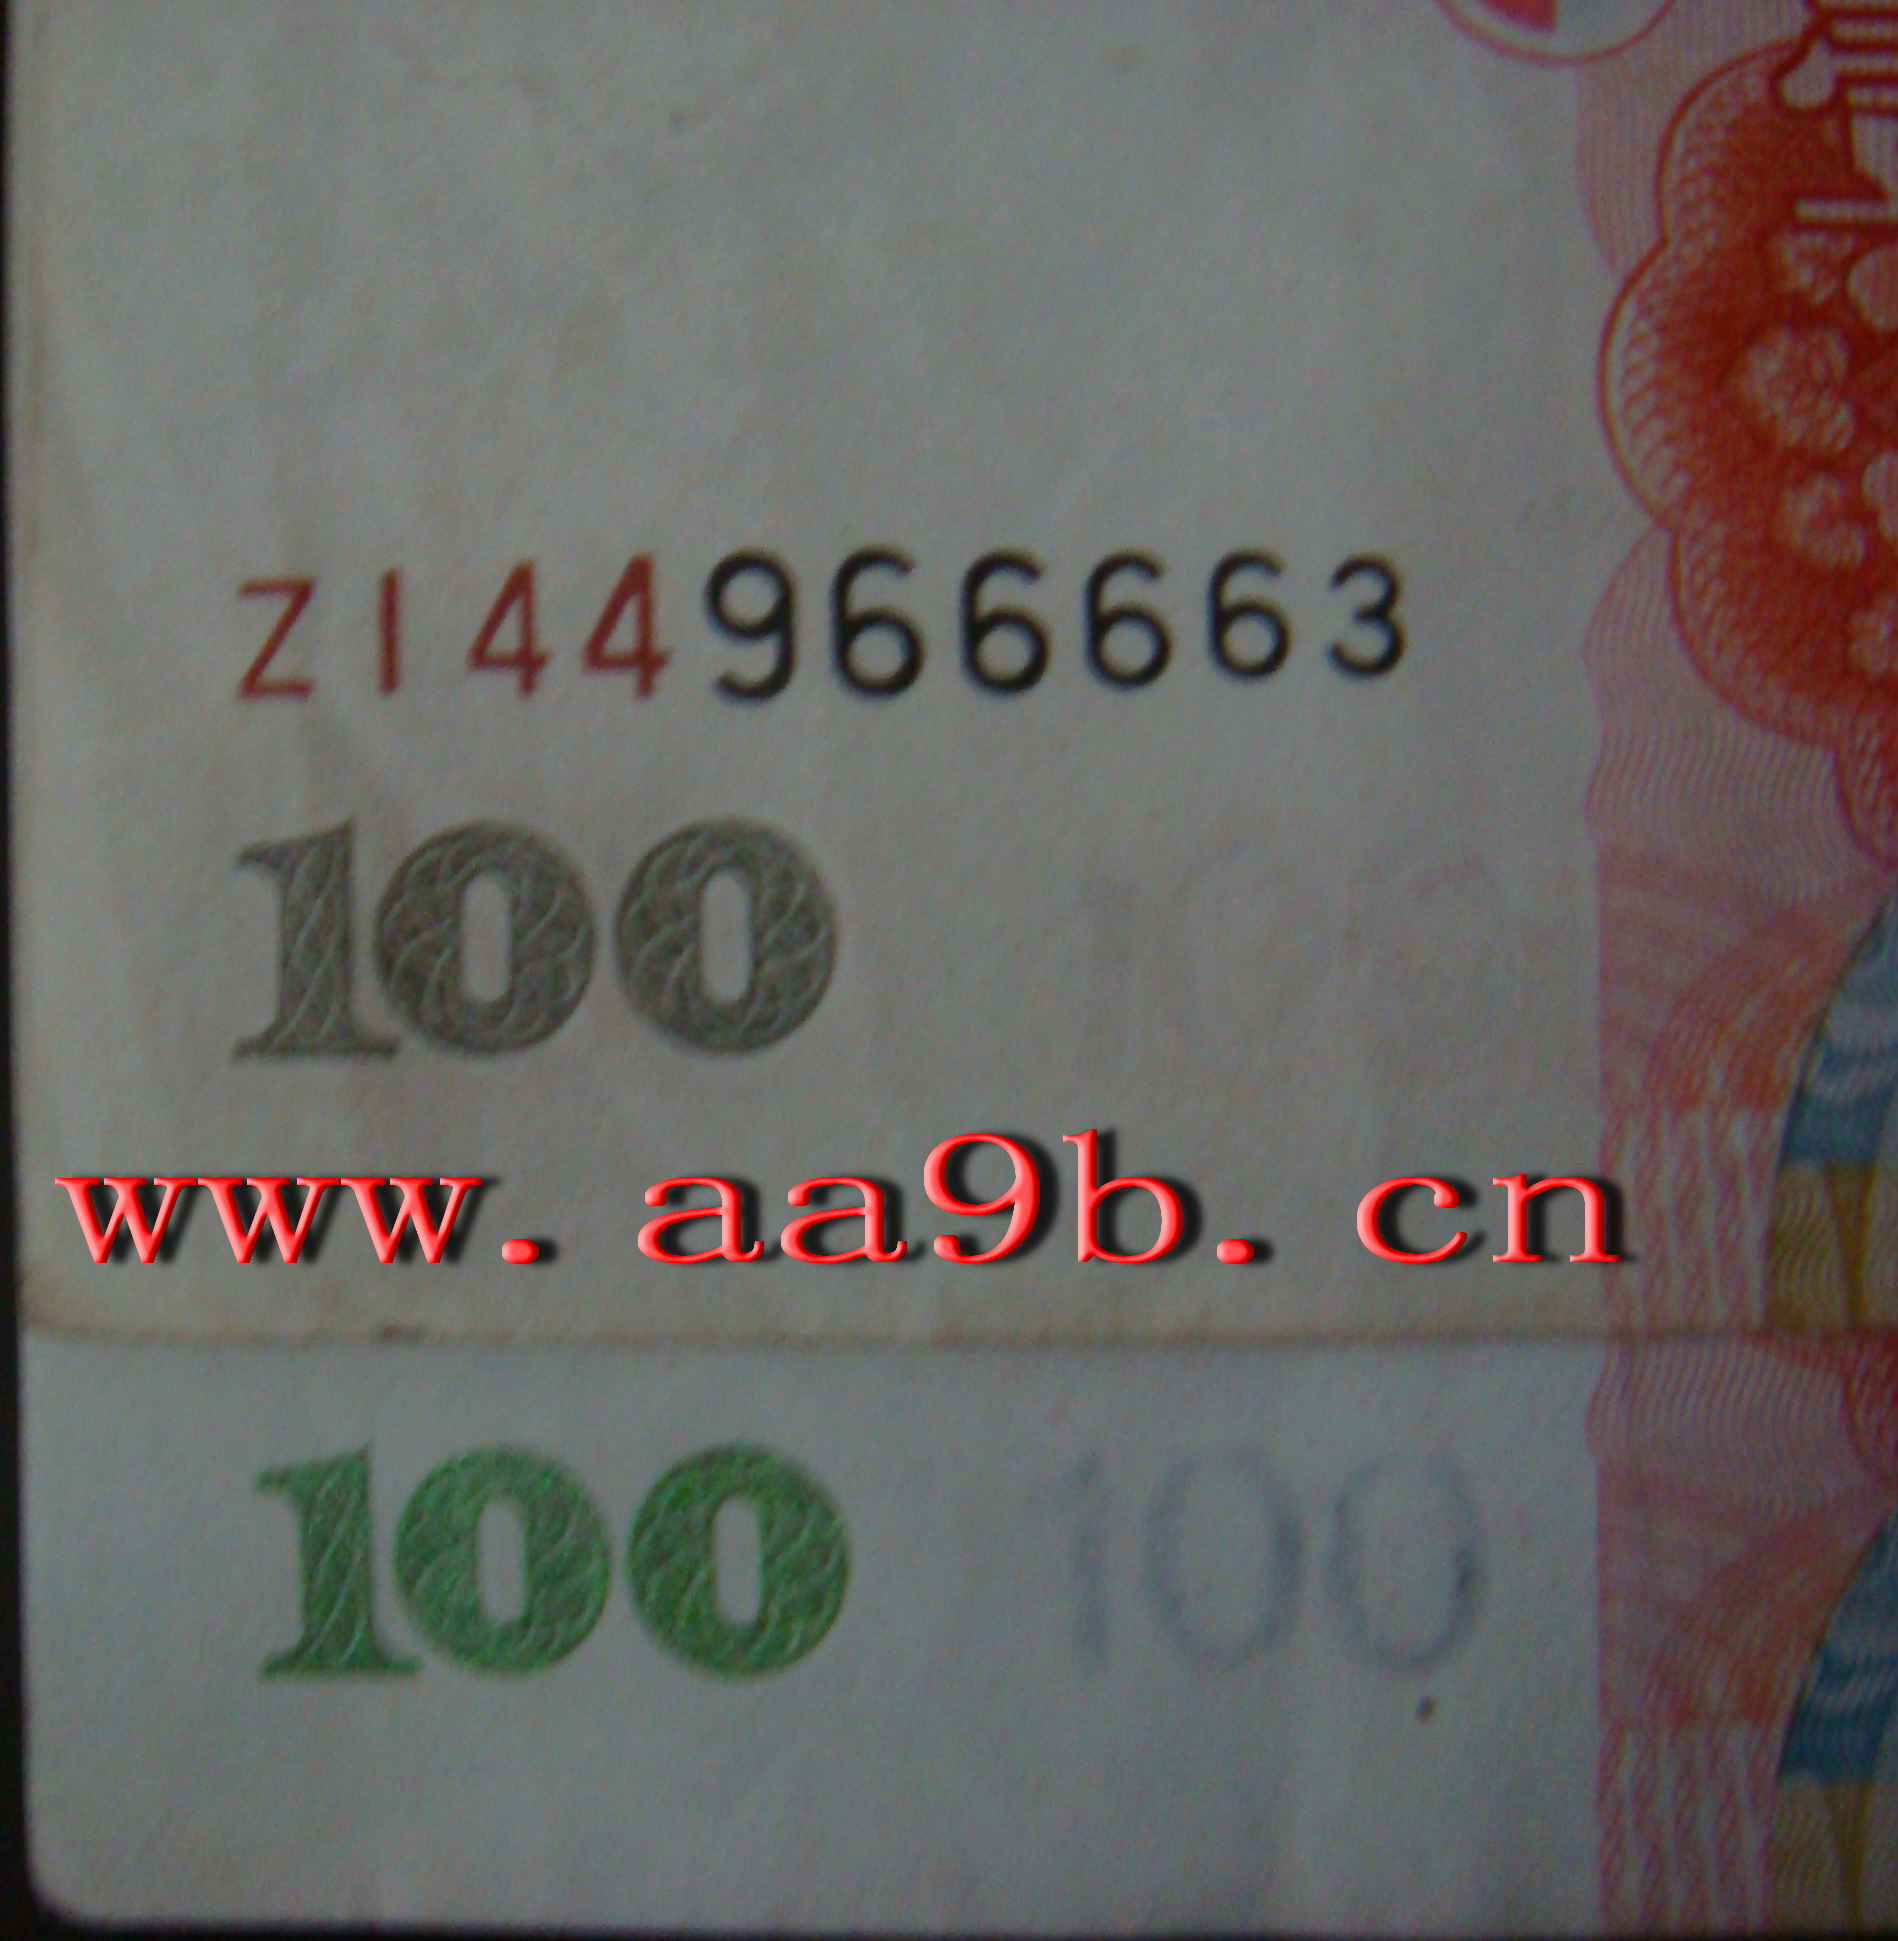 2005版100元错版人民币